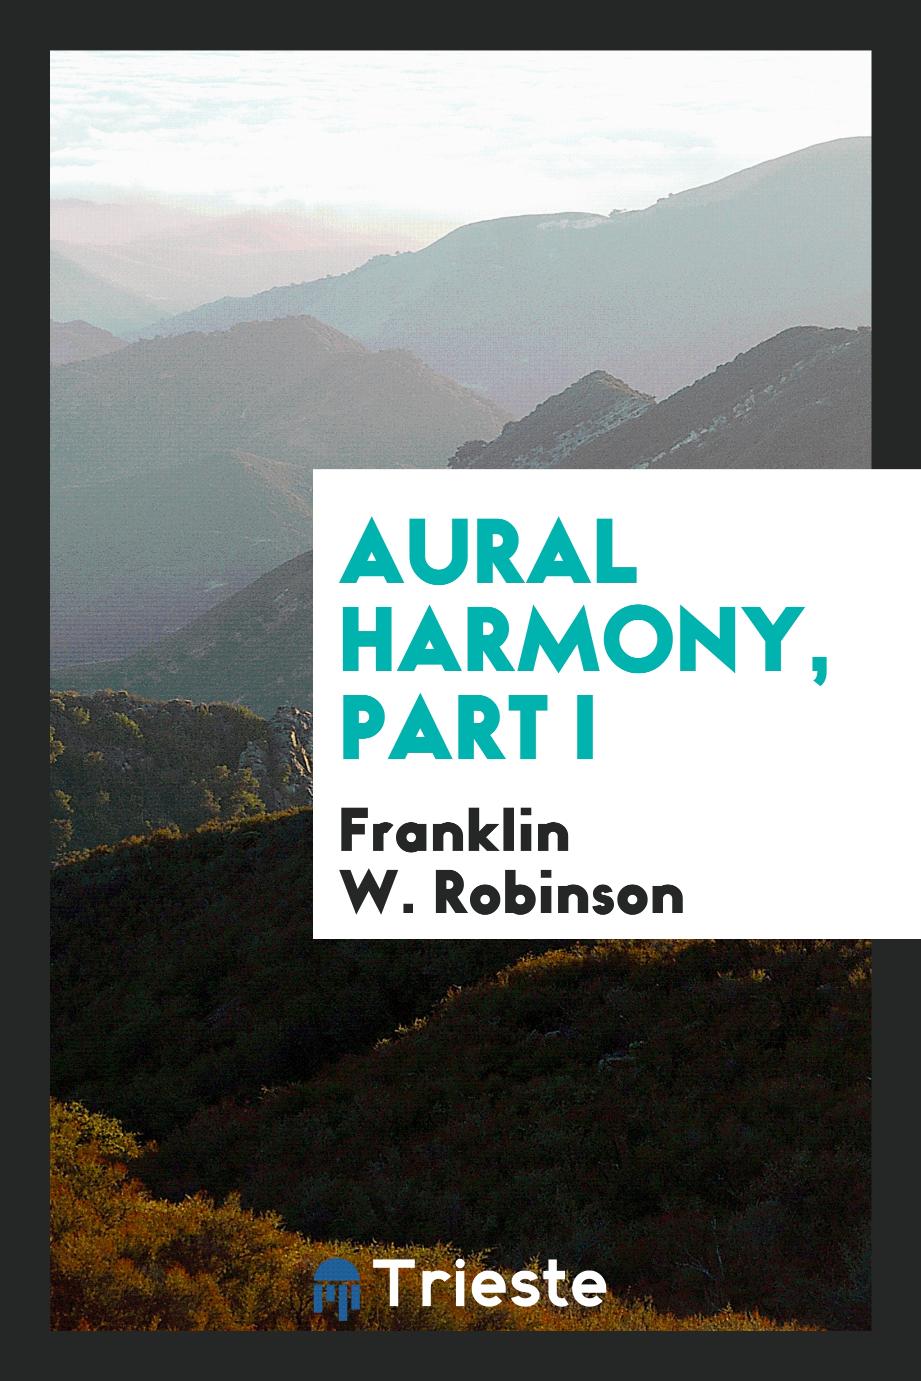 Aural harmony, Part I